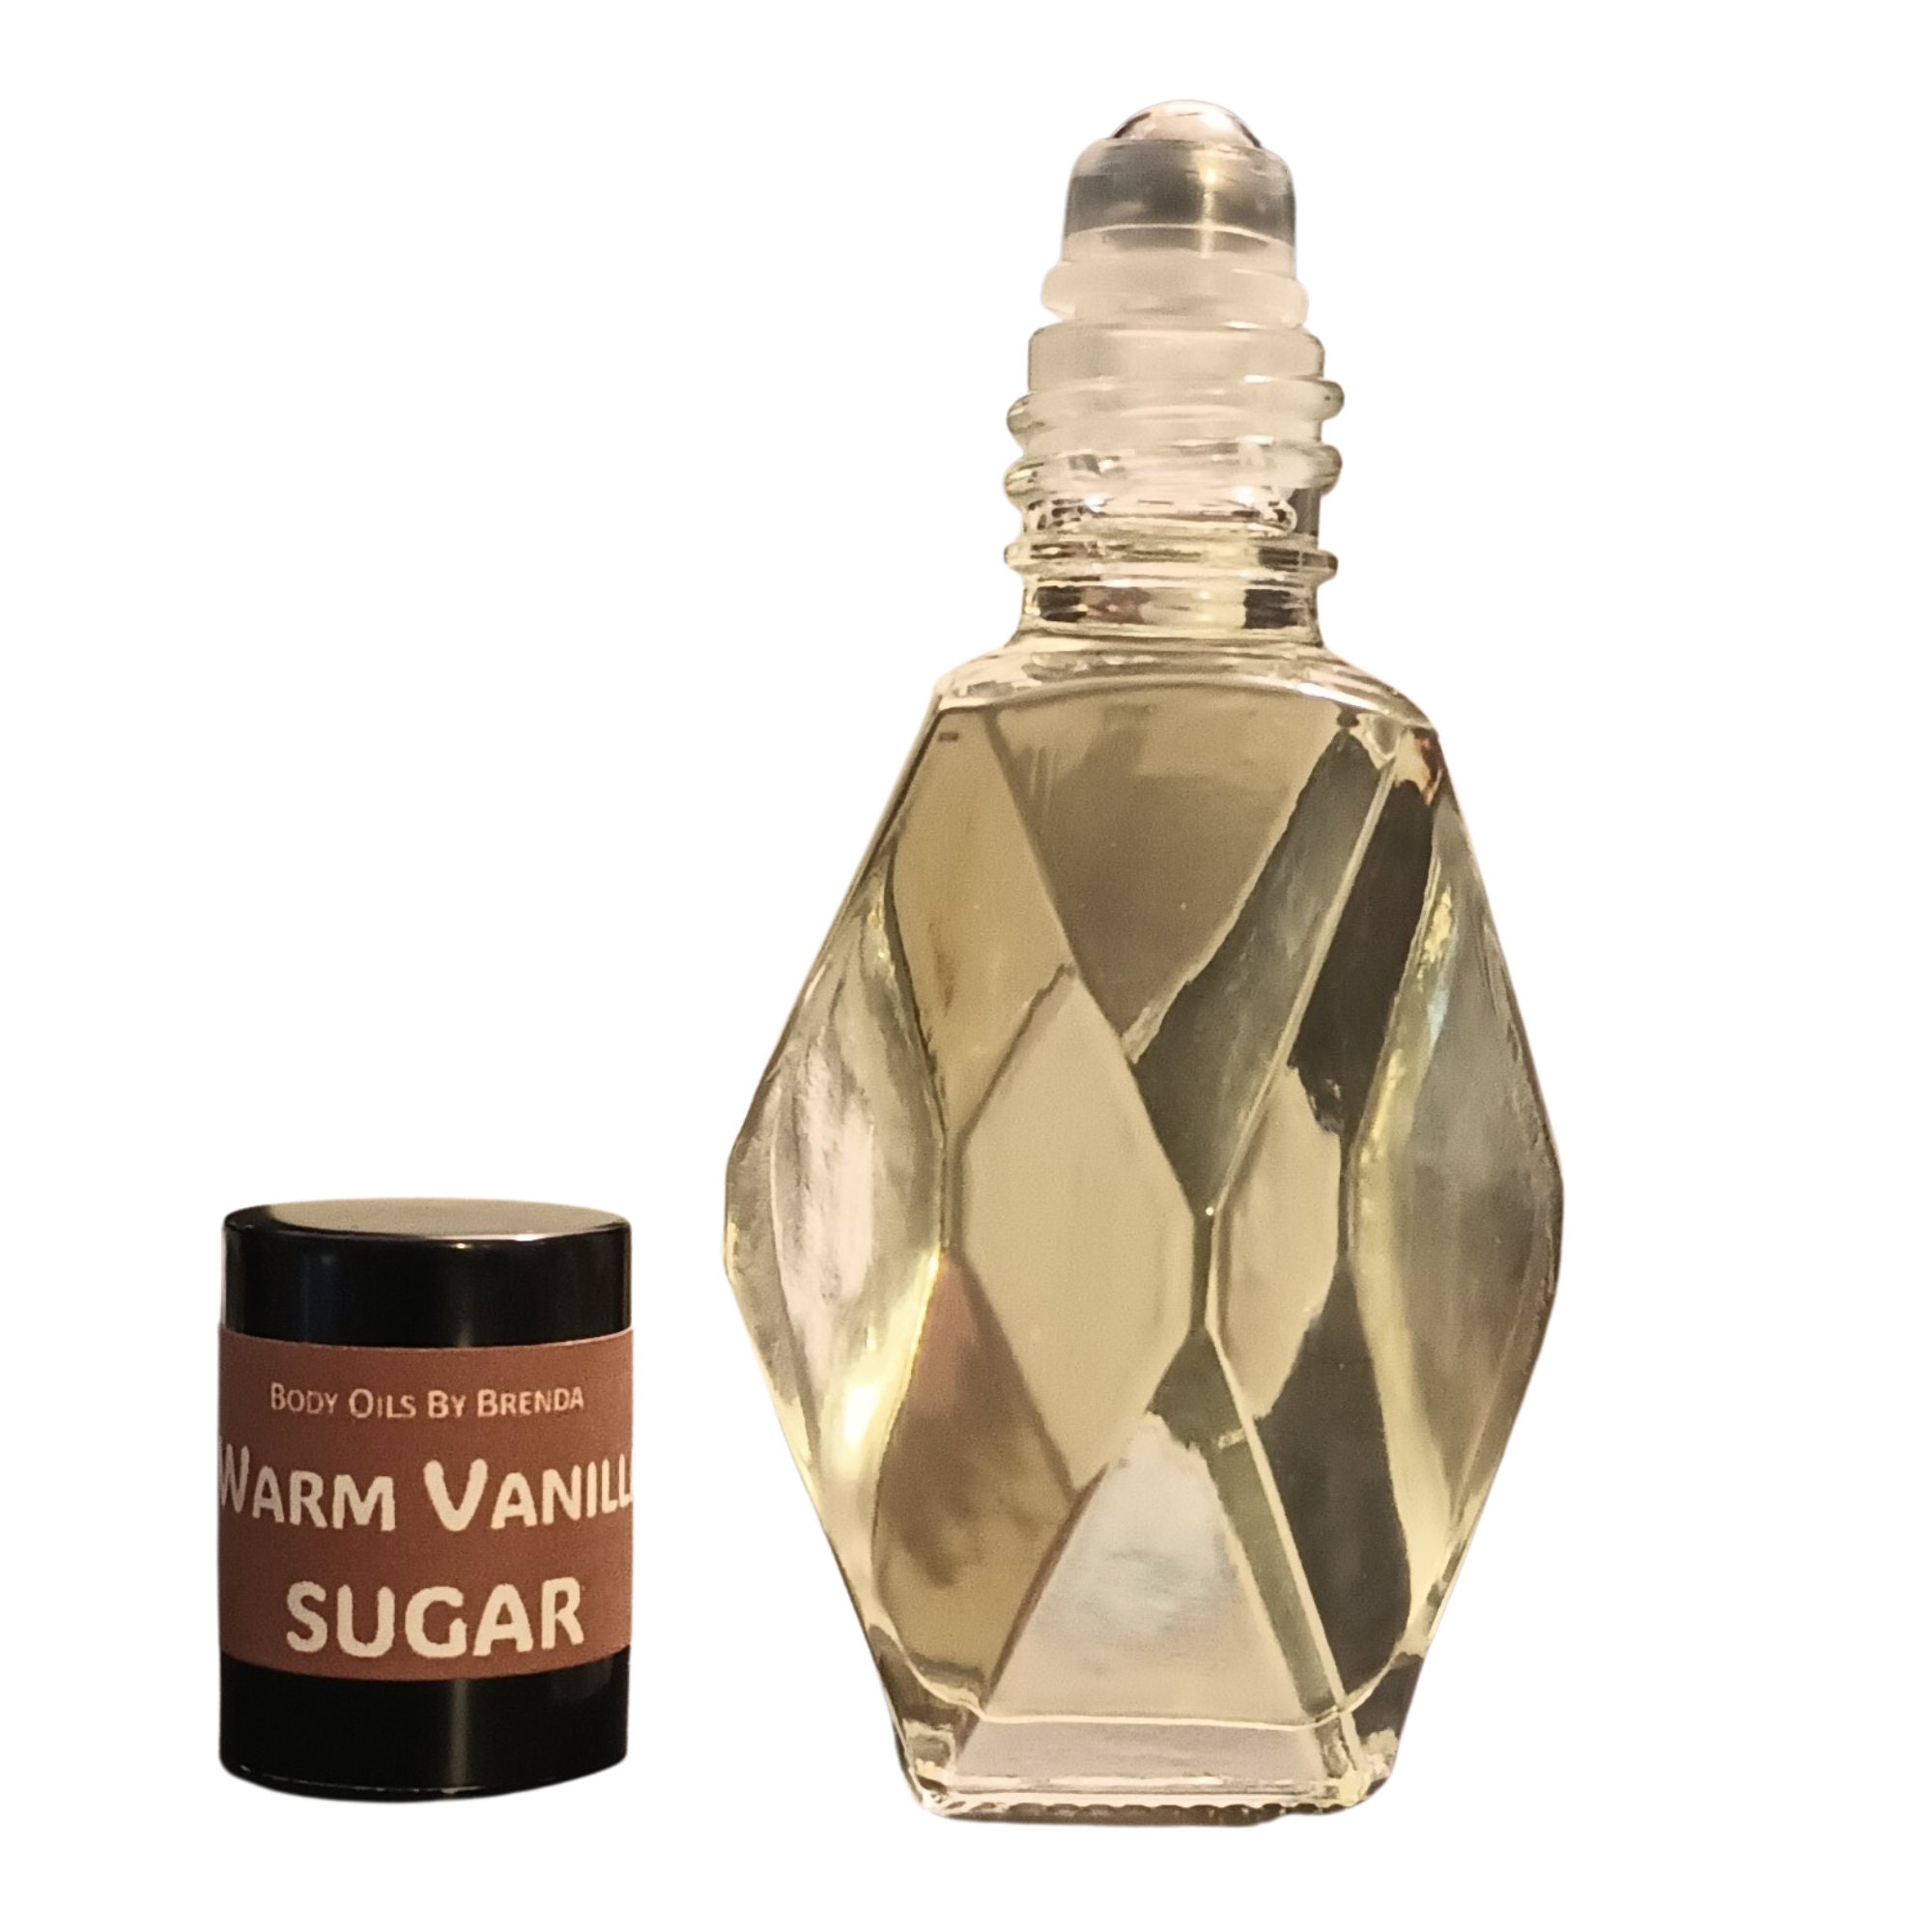 Sugar Warm Vanilla by BBW Women Fragrance Body Oils, - International  Fragrance Shop